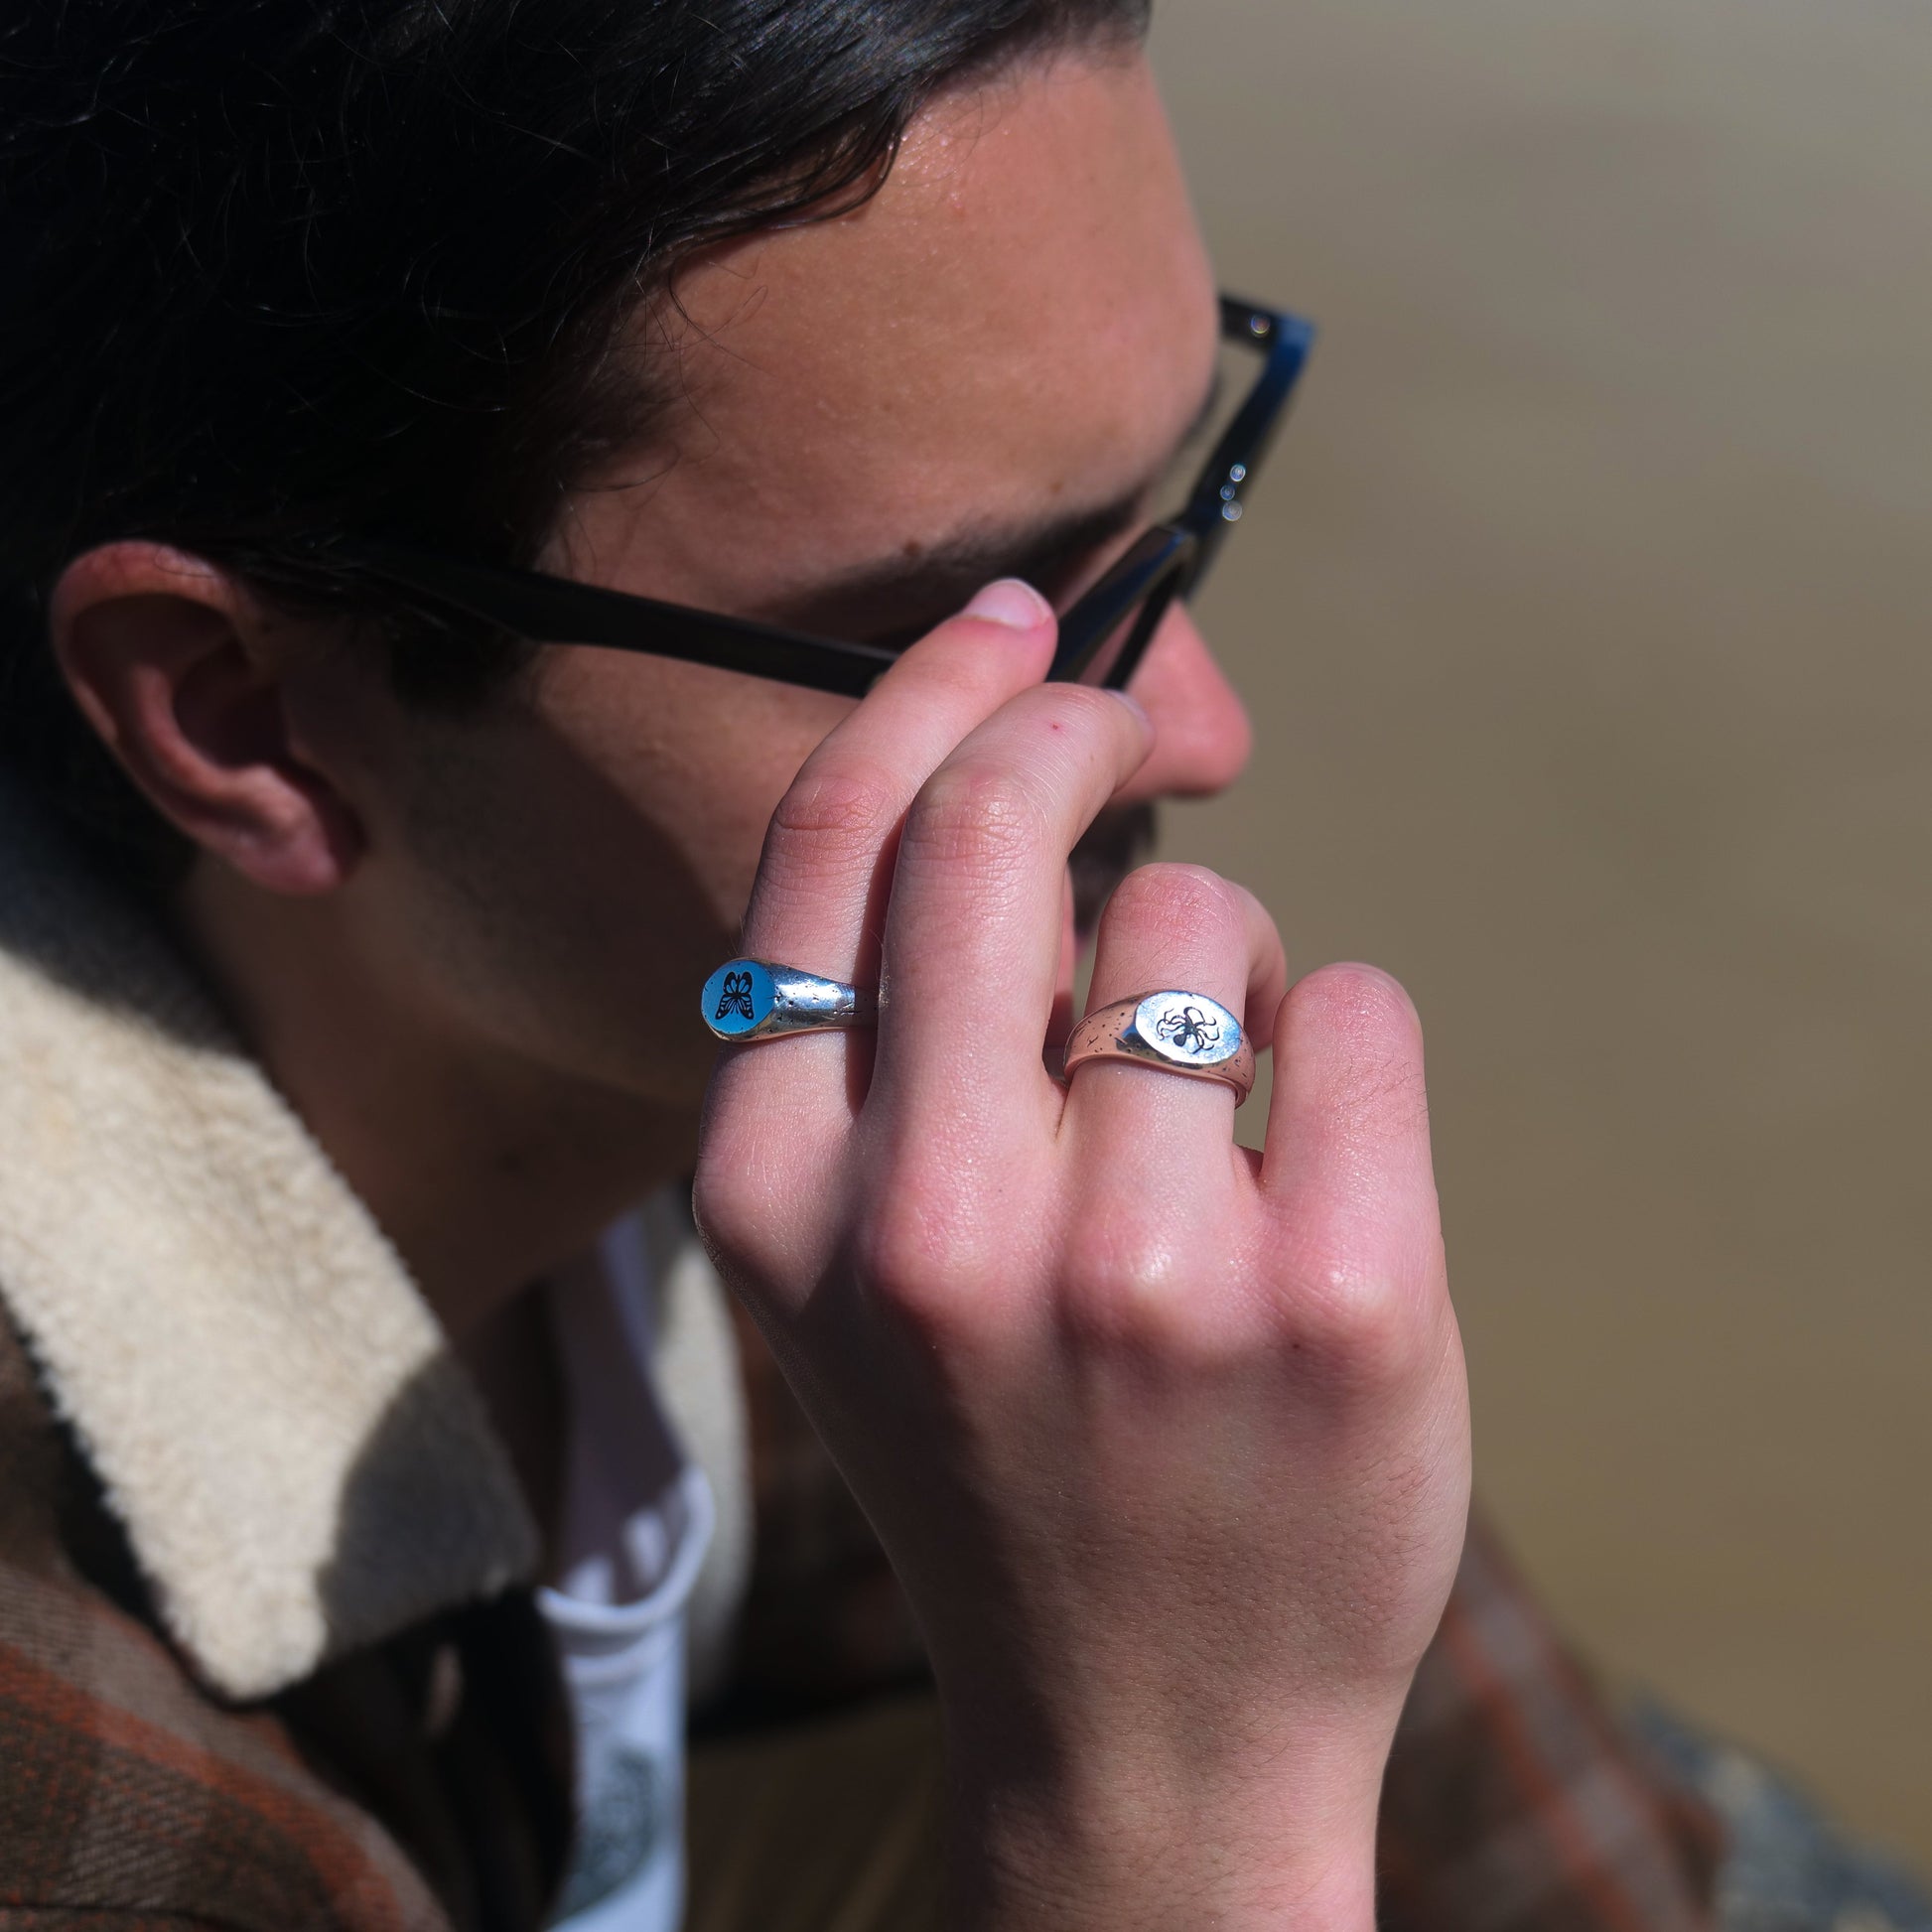 Man holding glasses wearing butterfly + kraken rings.